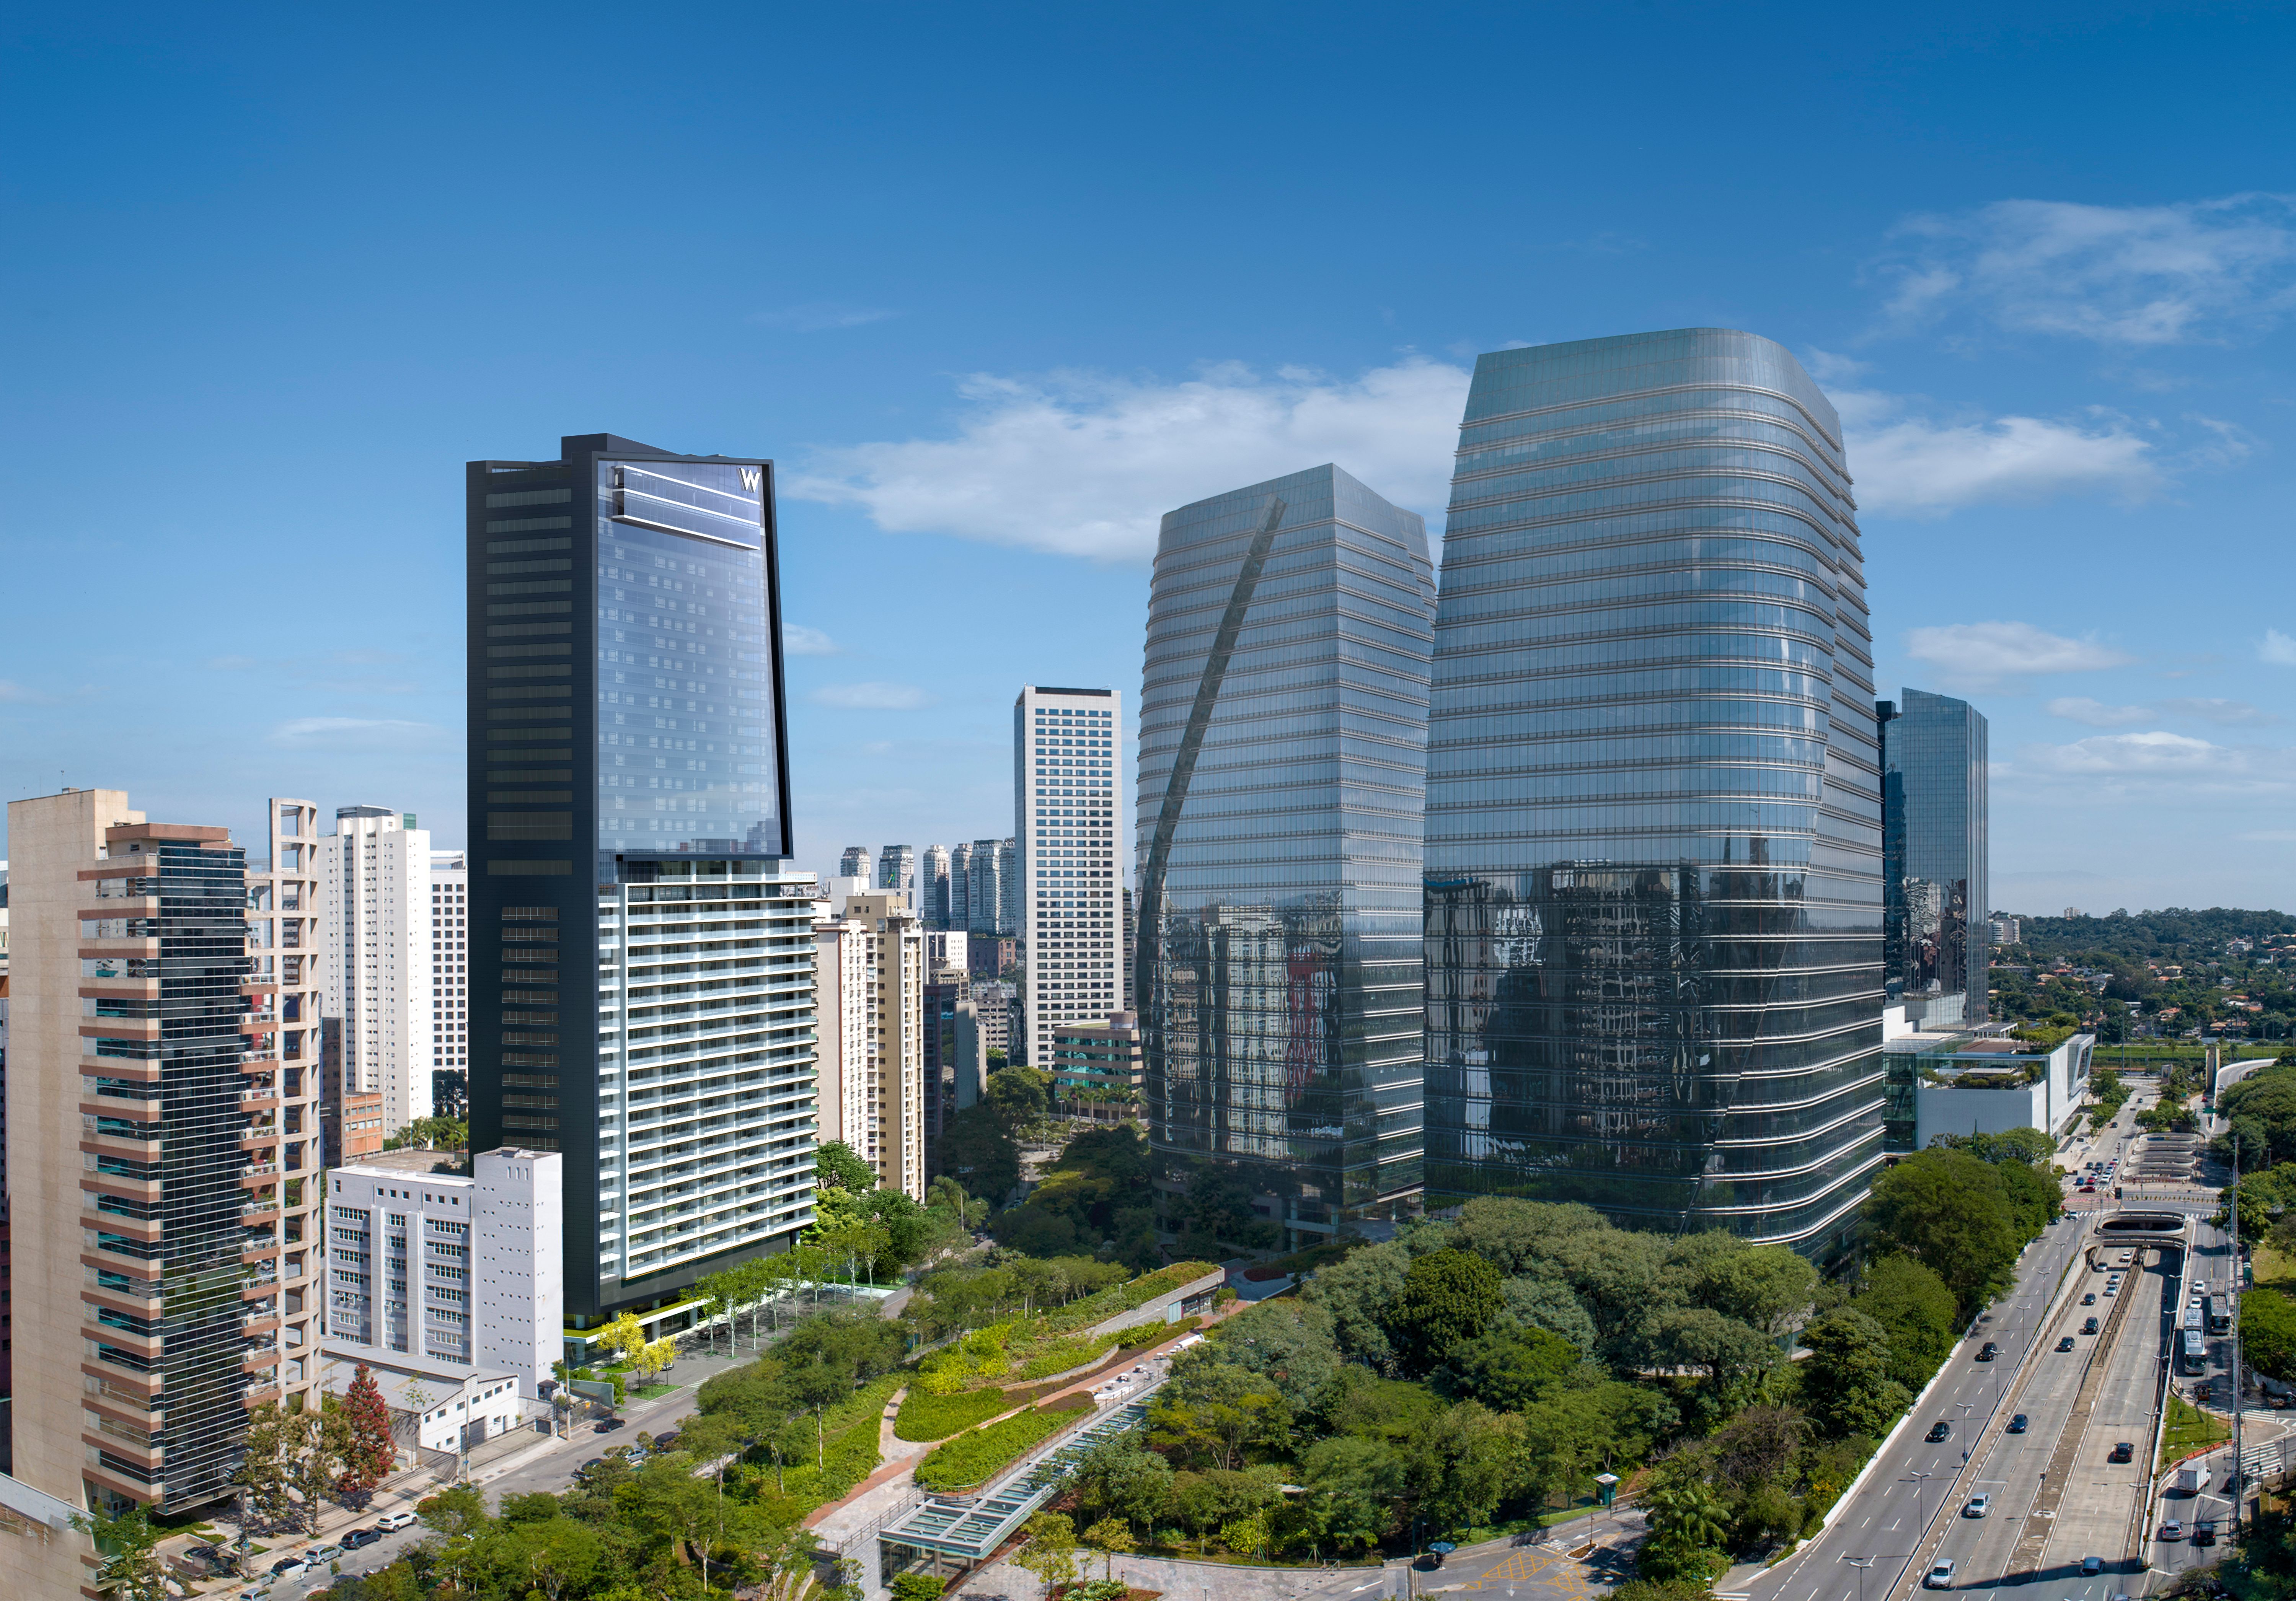 Cities: Skylines 2 será lançado sem atingir a meta de performance